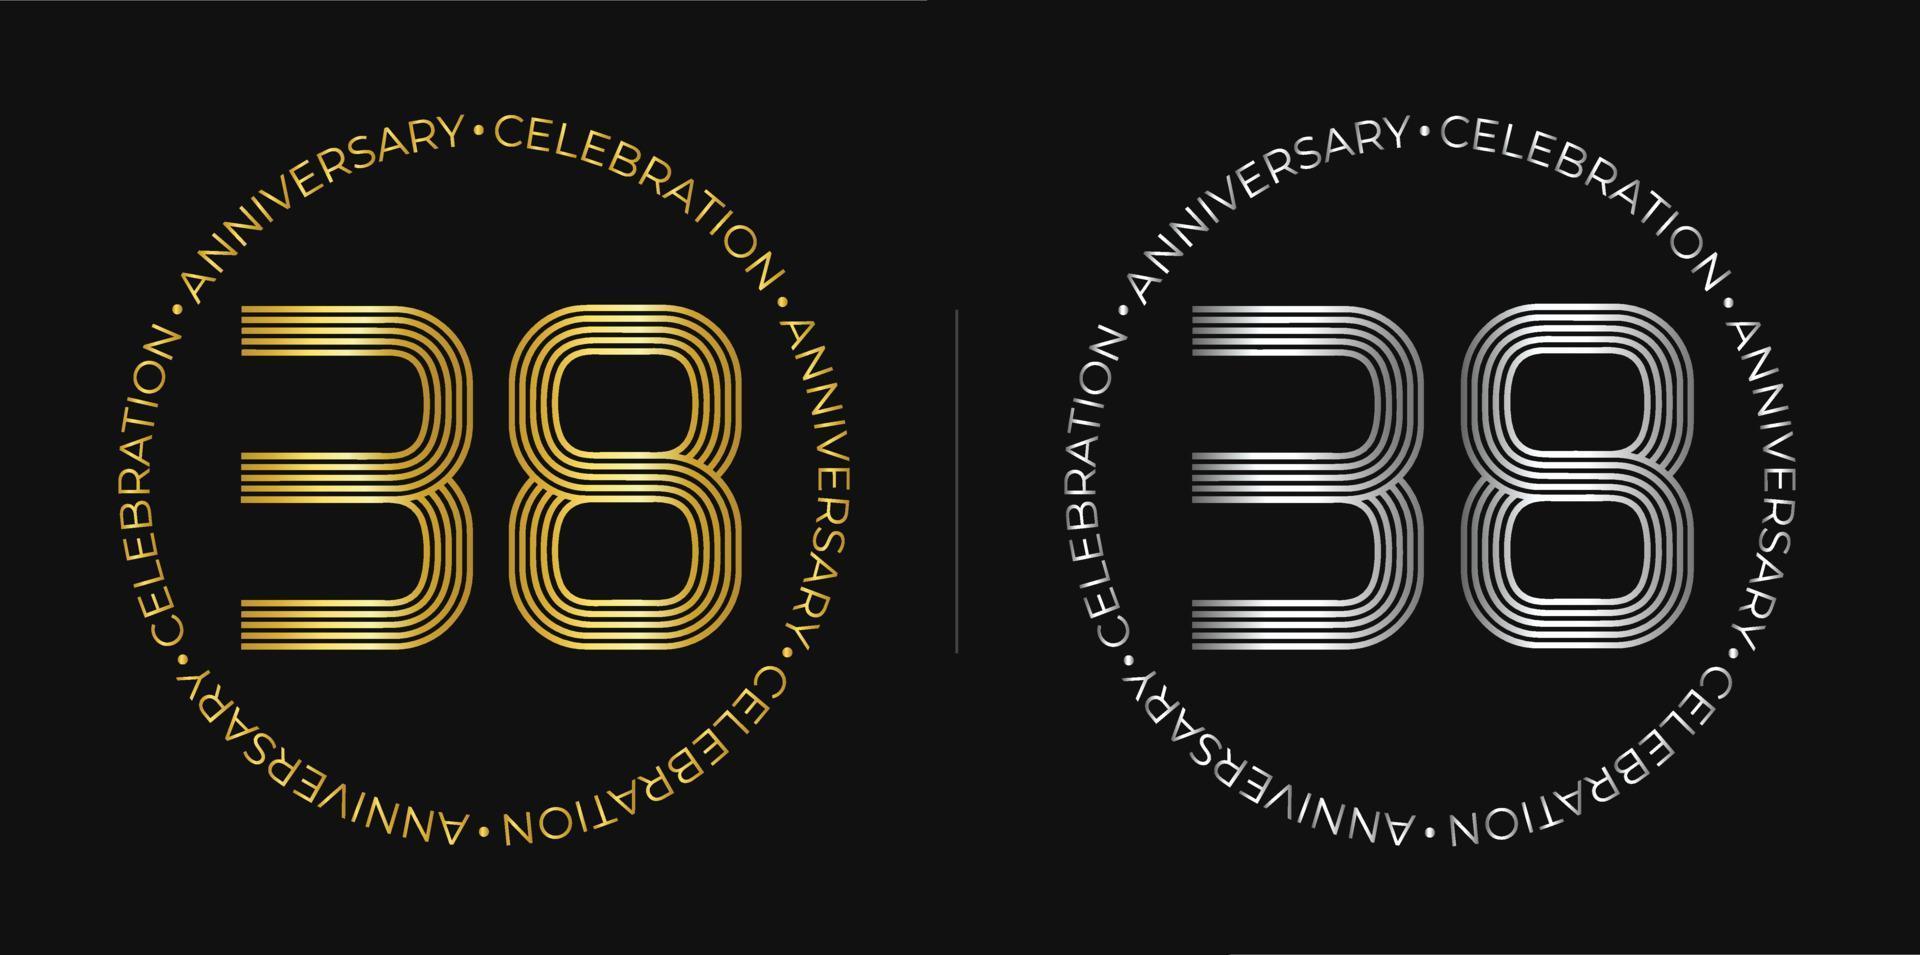 38e anniversaire. bannière de célébration d'anniversaire de trente-huit ans aux couleurs dorées et argentées. logo circulaire avec des chiffres originaux aux lignes élégantes. vecteur